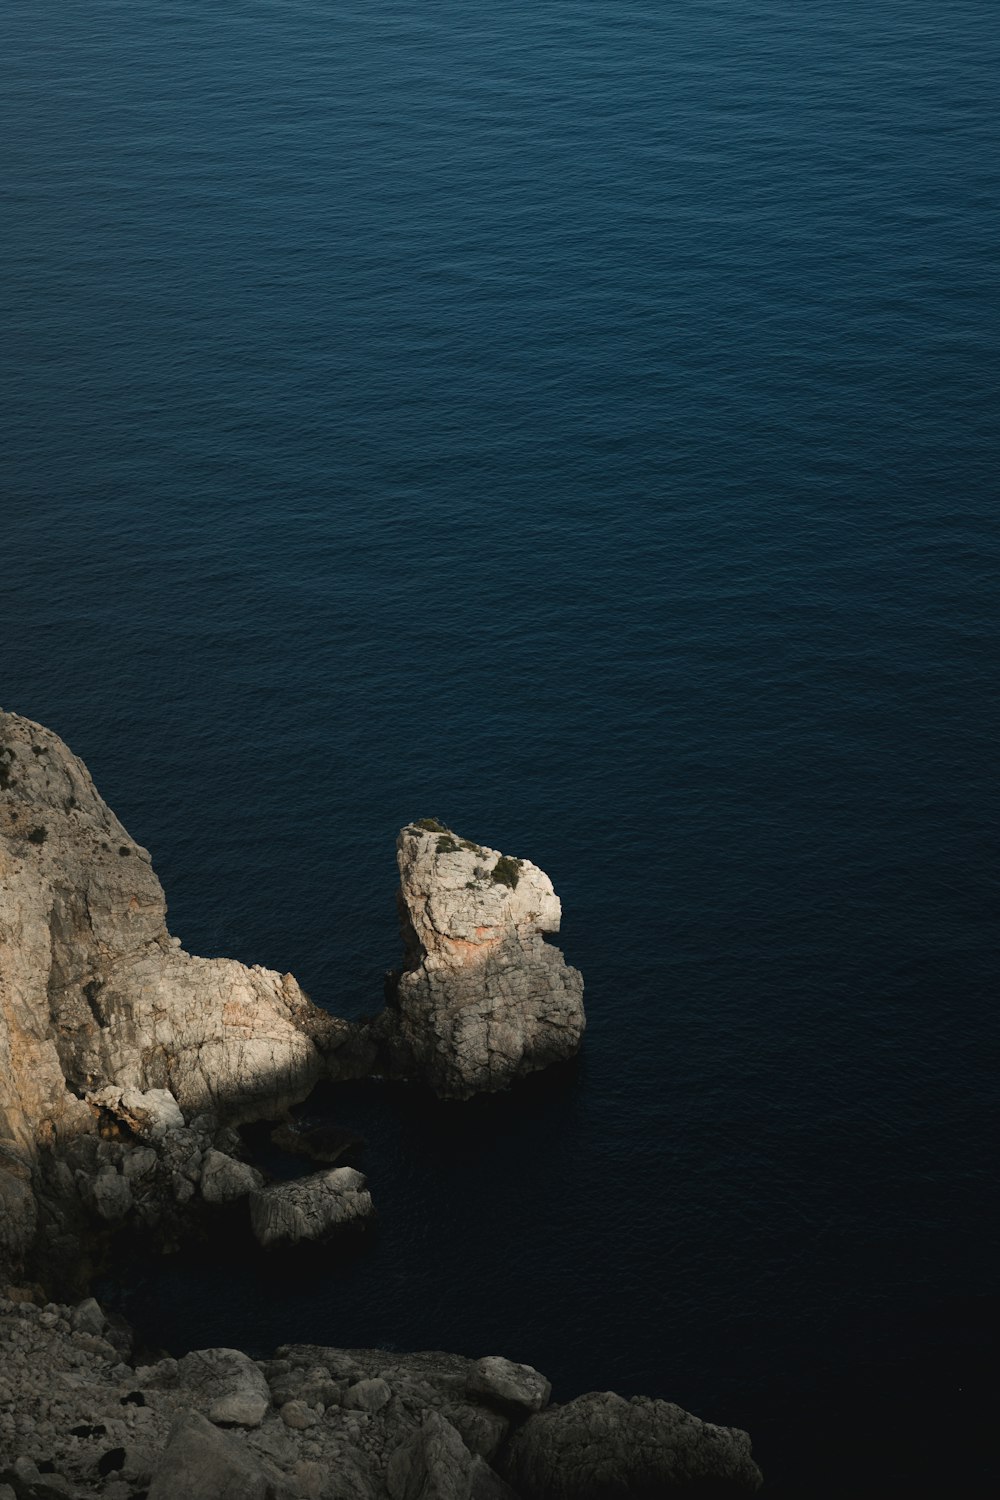 Un pájaro solitario sentado en una roca cerca del océano